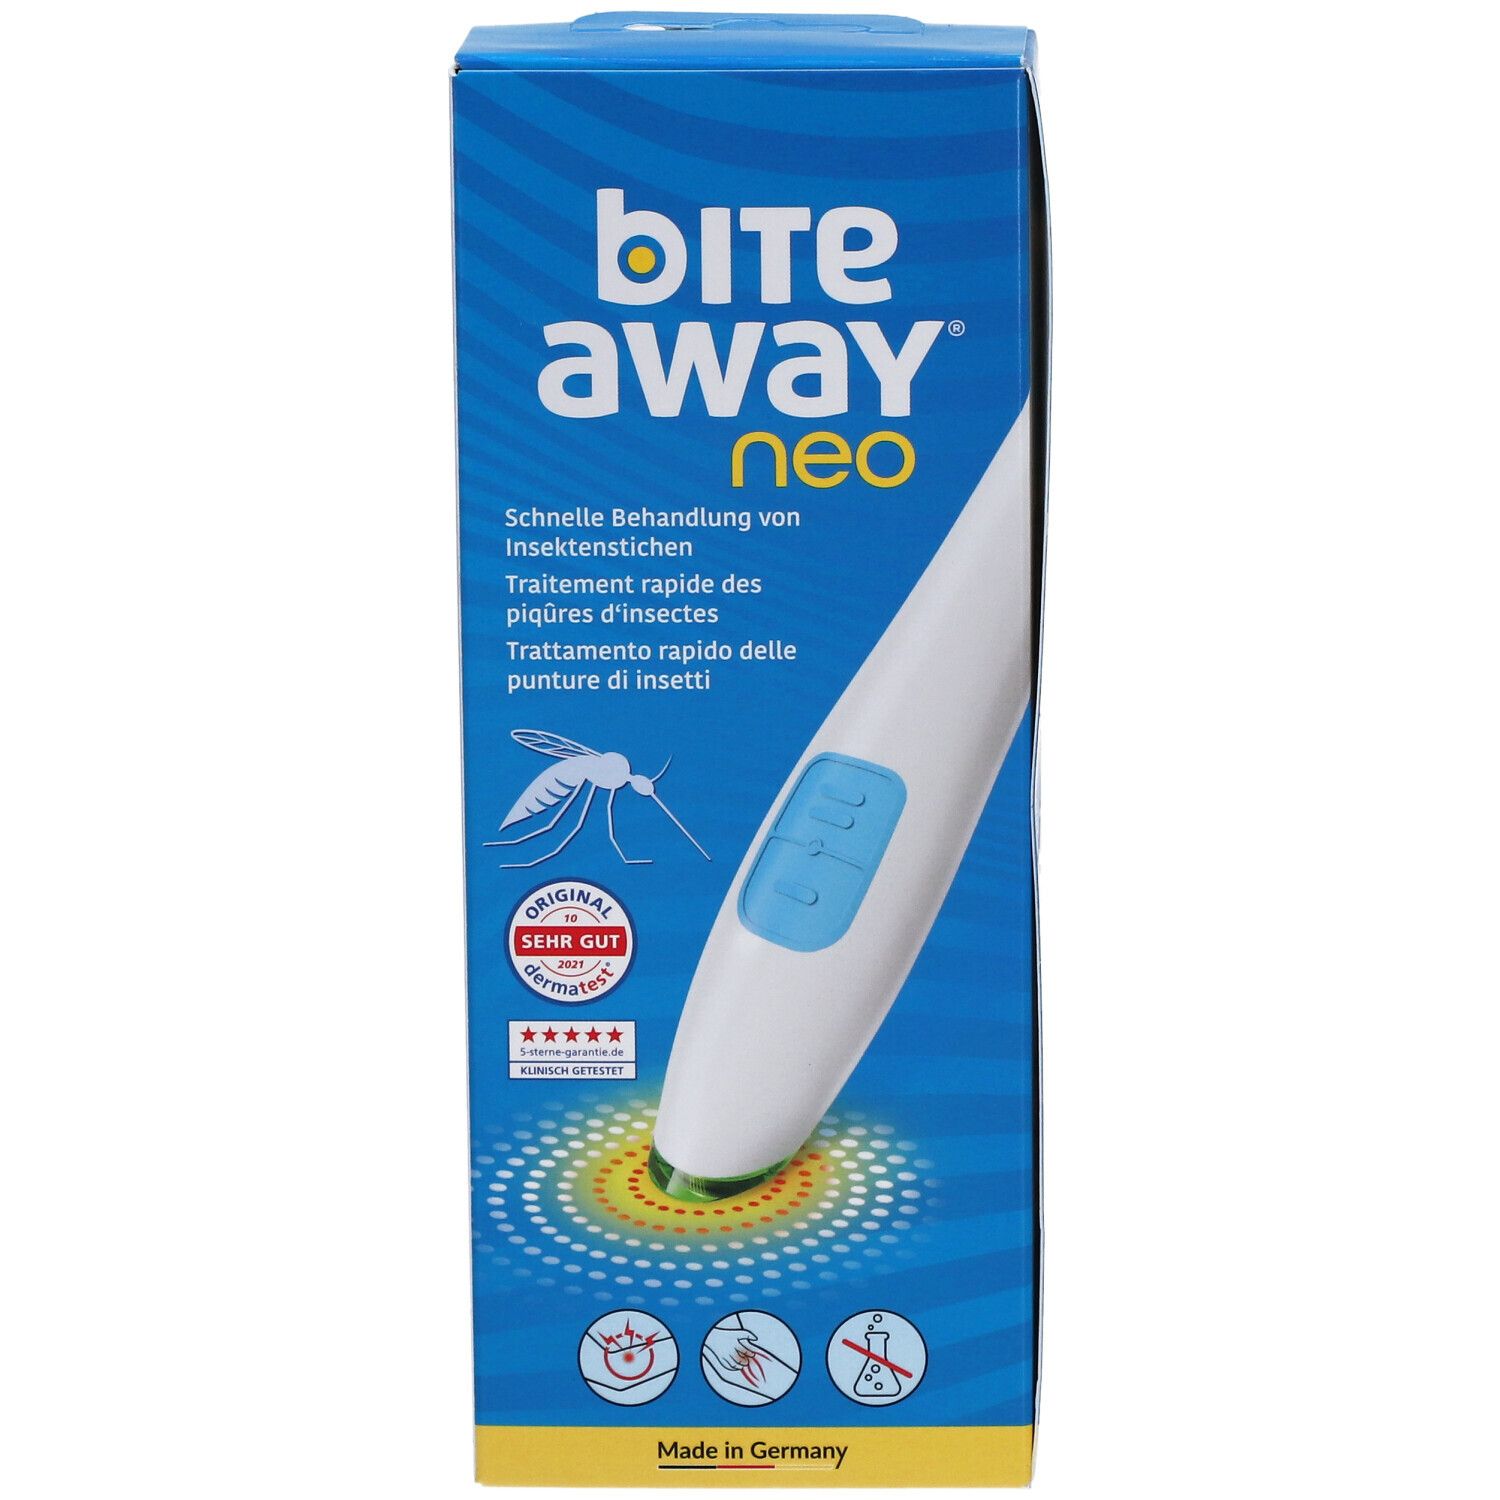 bite away® neo